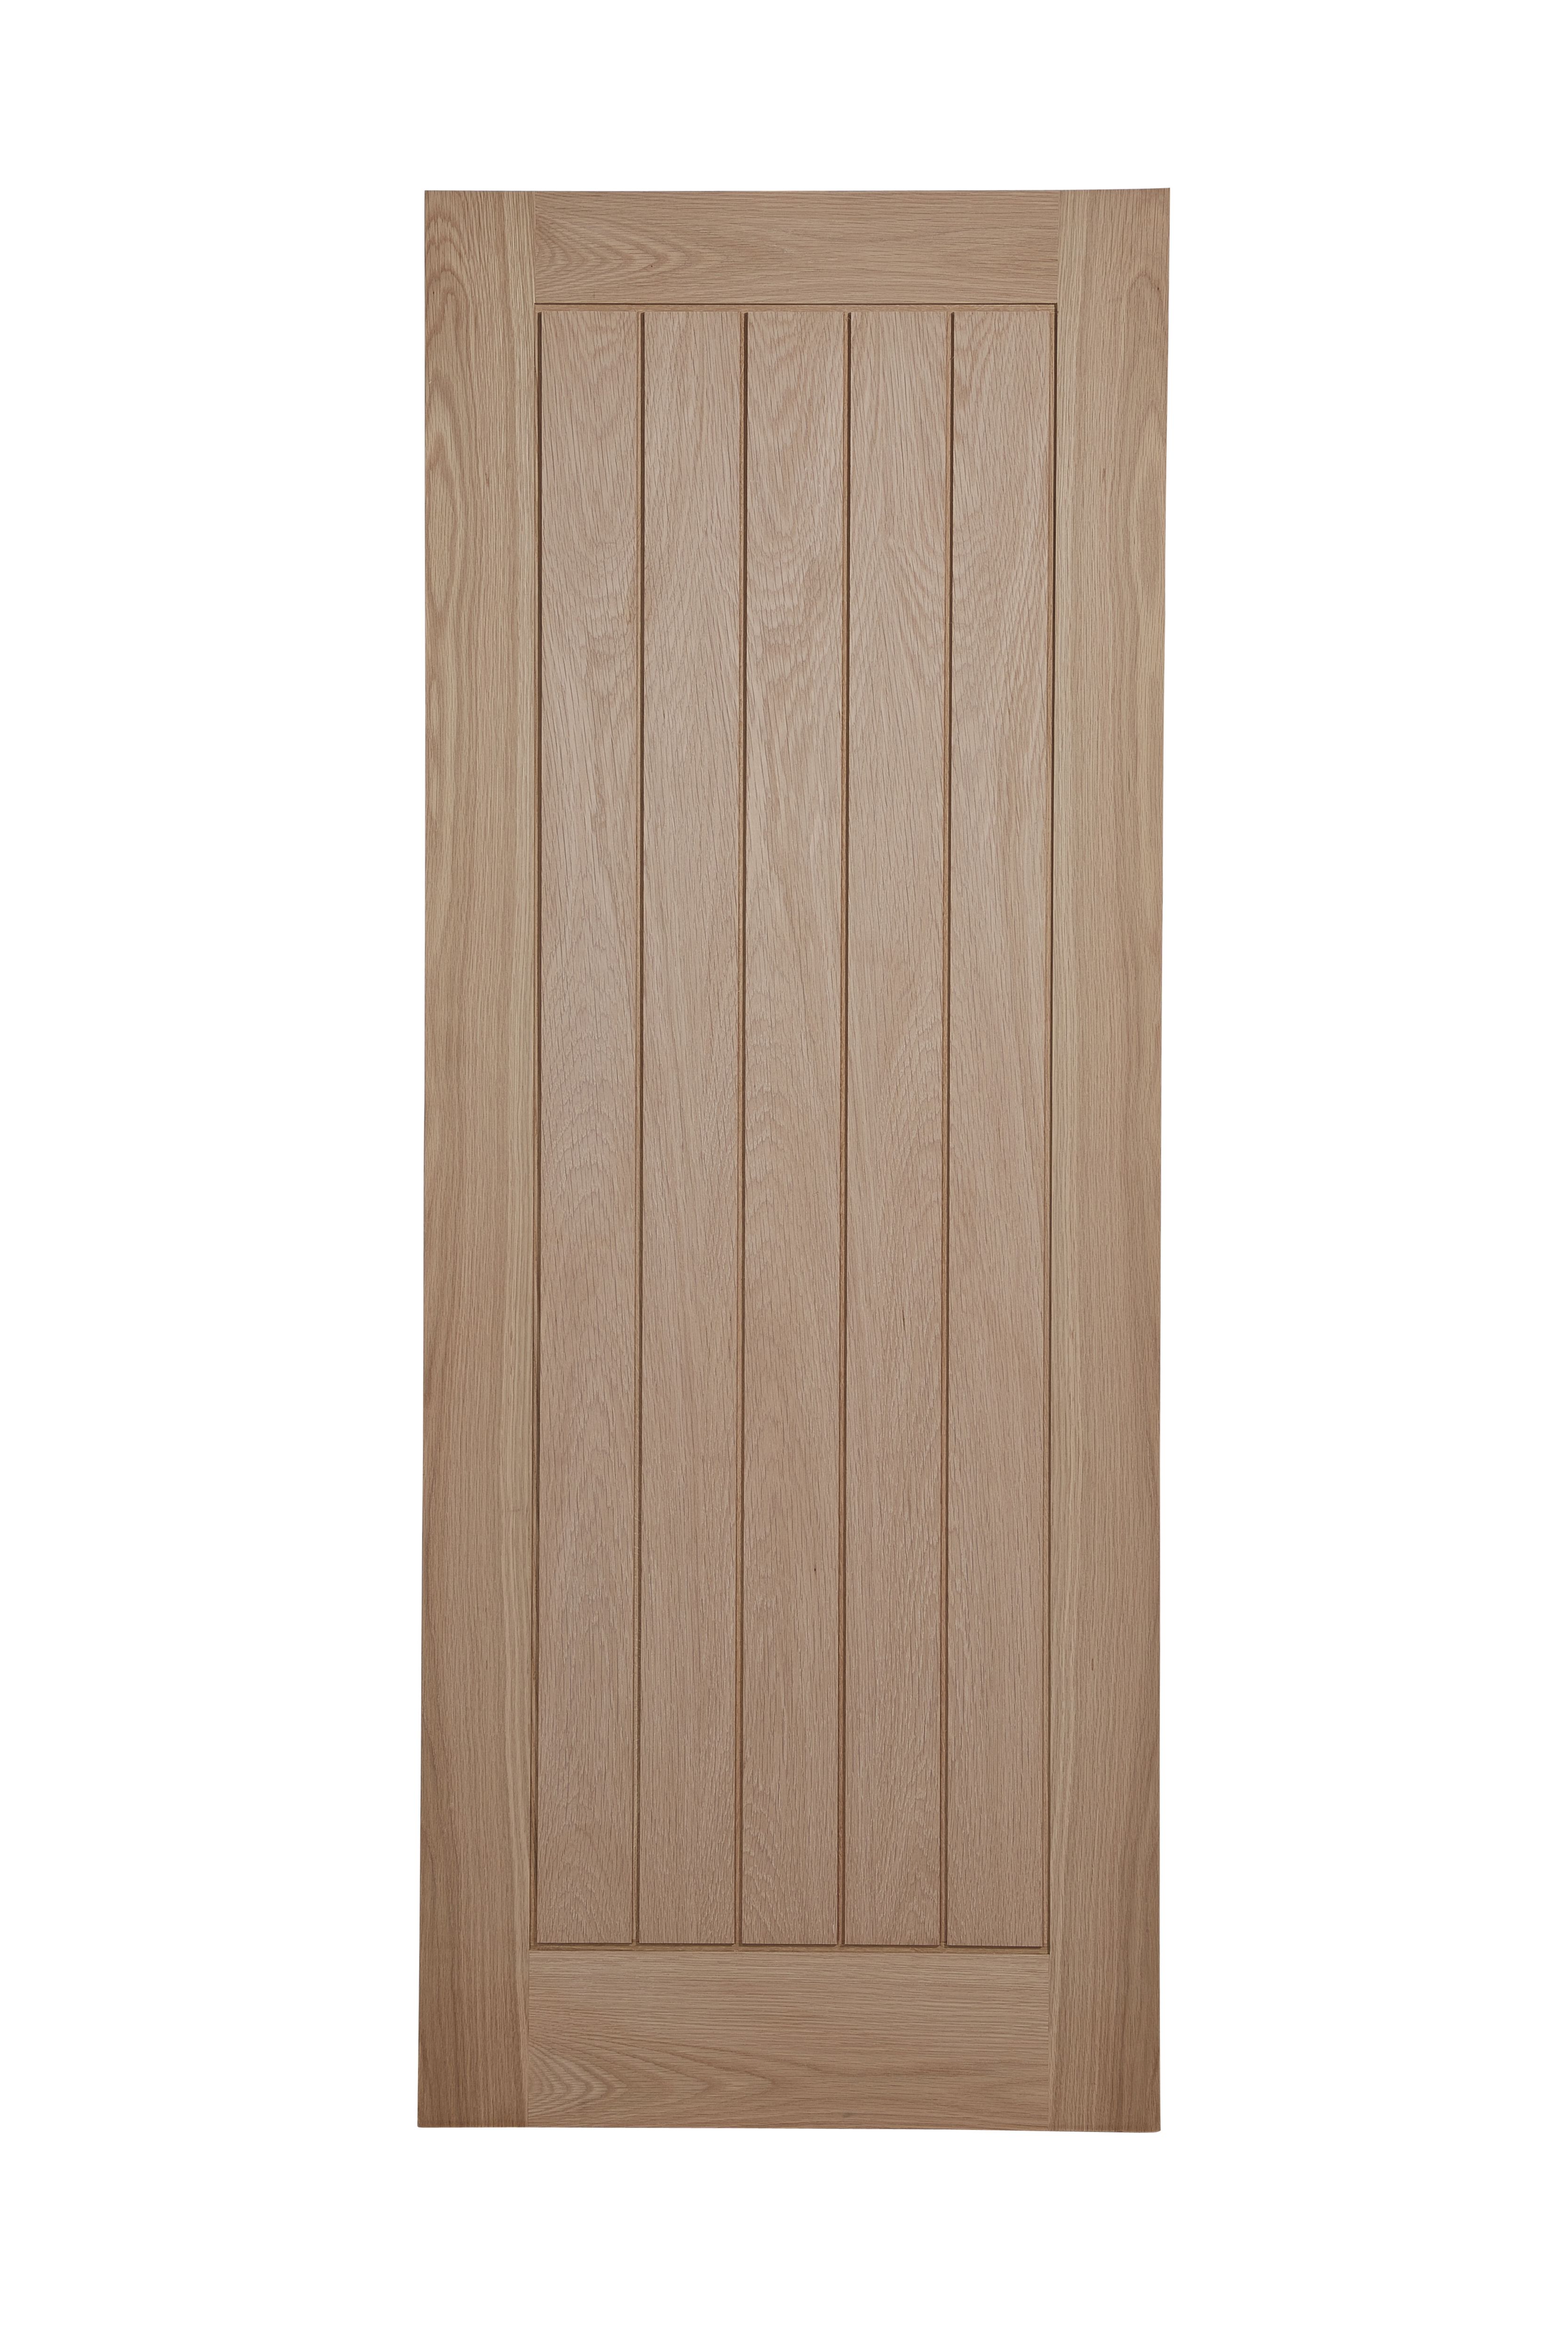 Geom Unglazed Cottage Oak White oak veneer Internal Timber Door, (H)2040mm (W)726mm (T)40mm